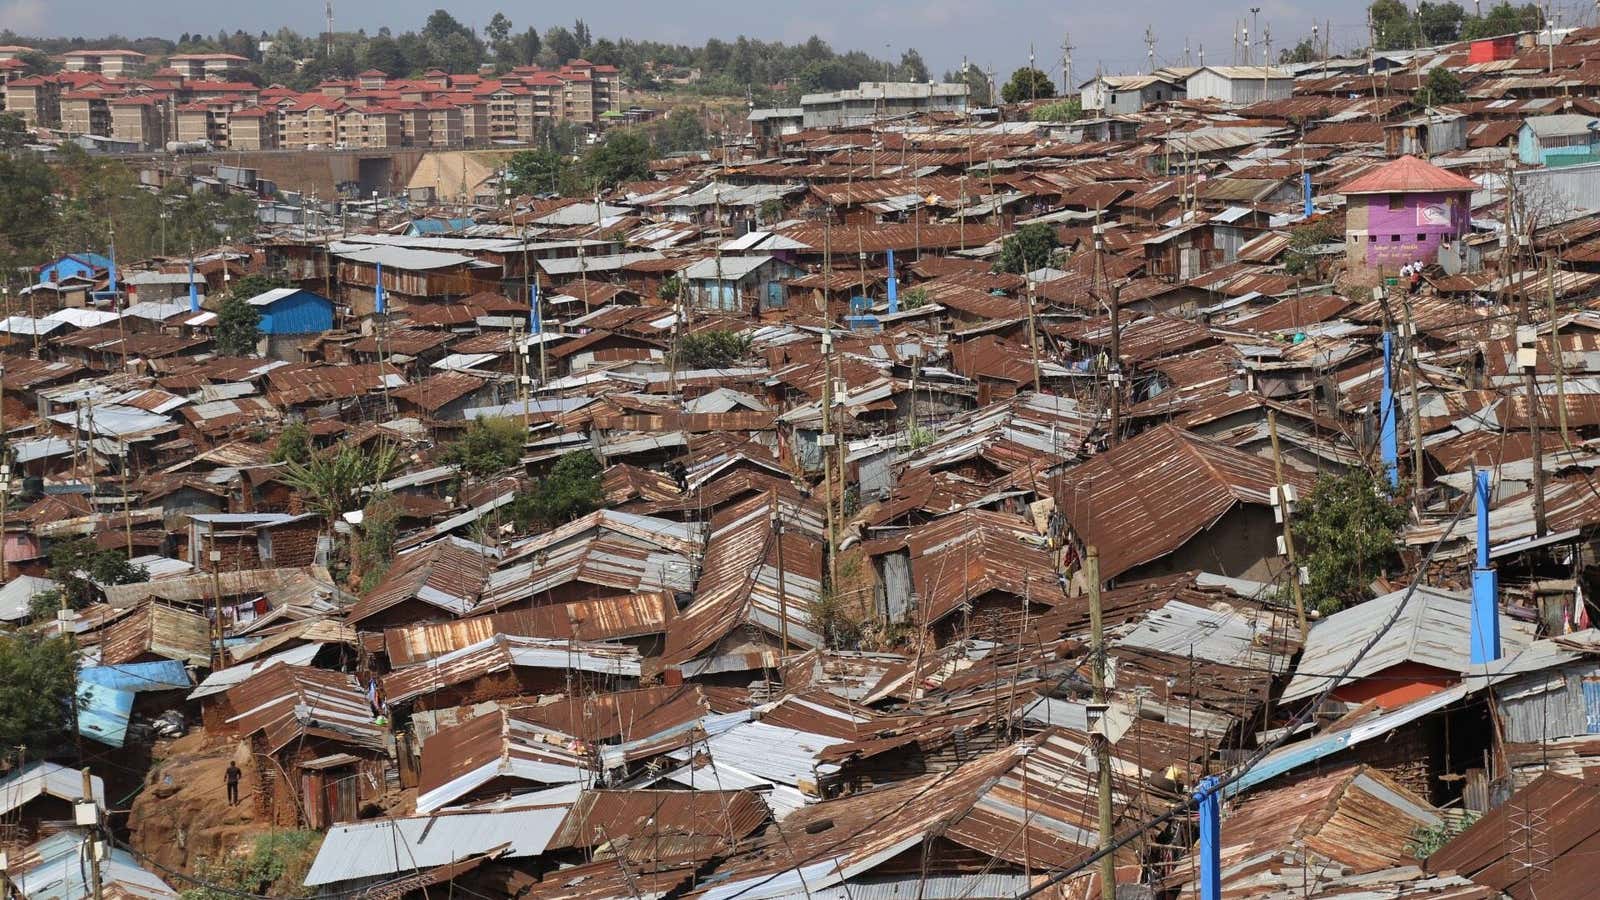 Blue pipes provide clean water to Kibera slum in Kenya